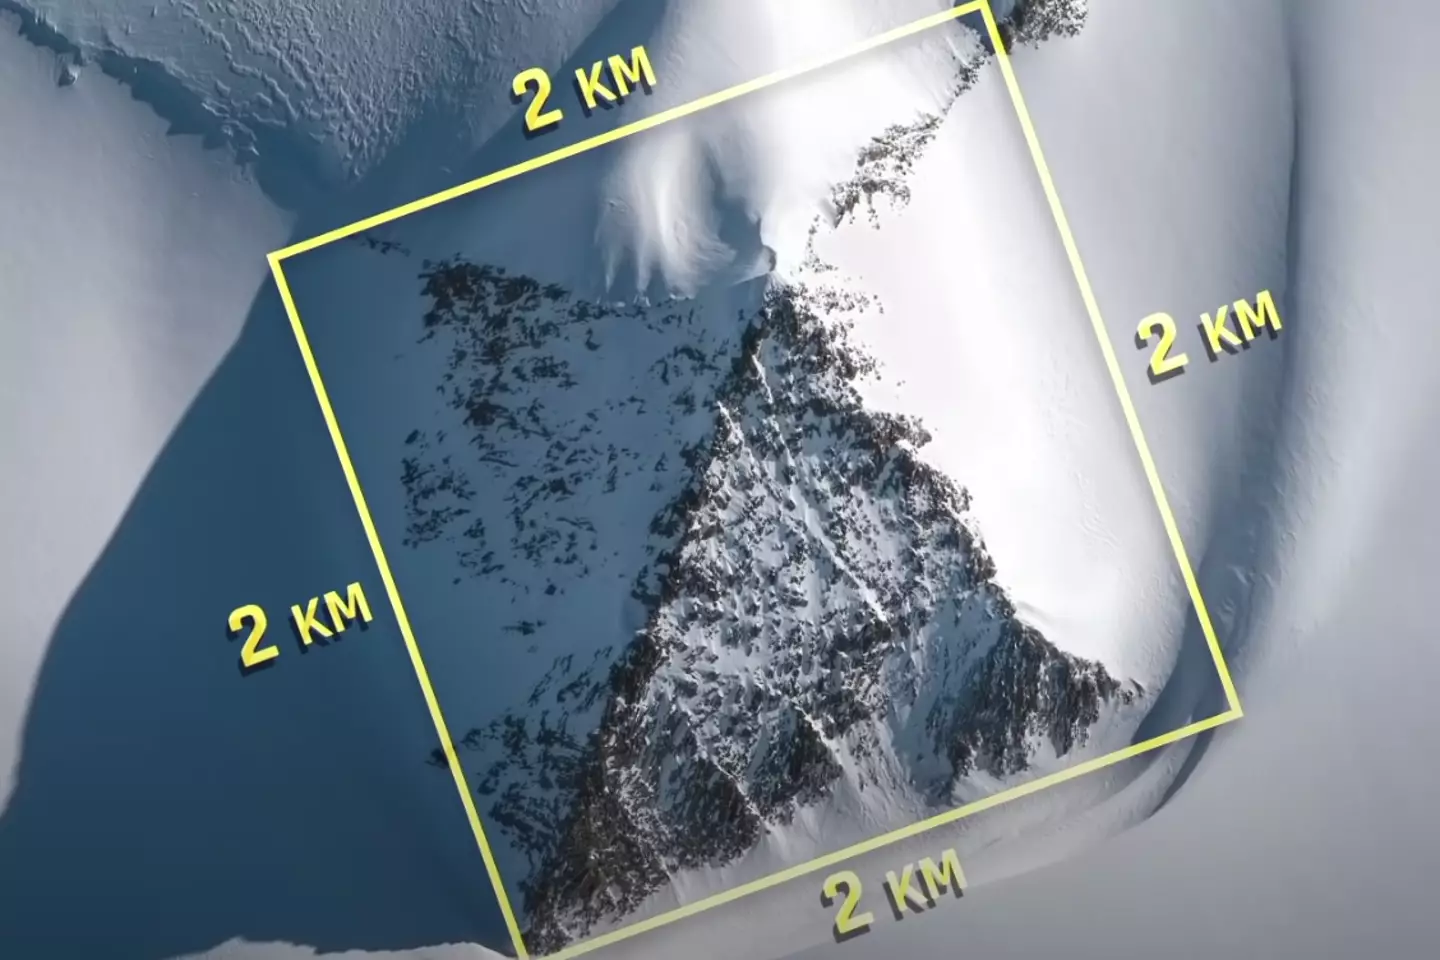 Misteriosa ‘pirâmide’ descoberta sob o gelo na Antártica gerou teorias de conspiração bizarras